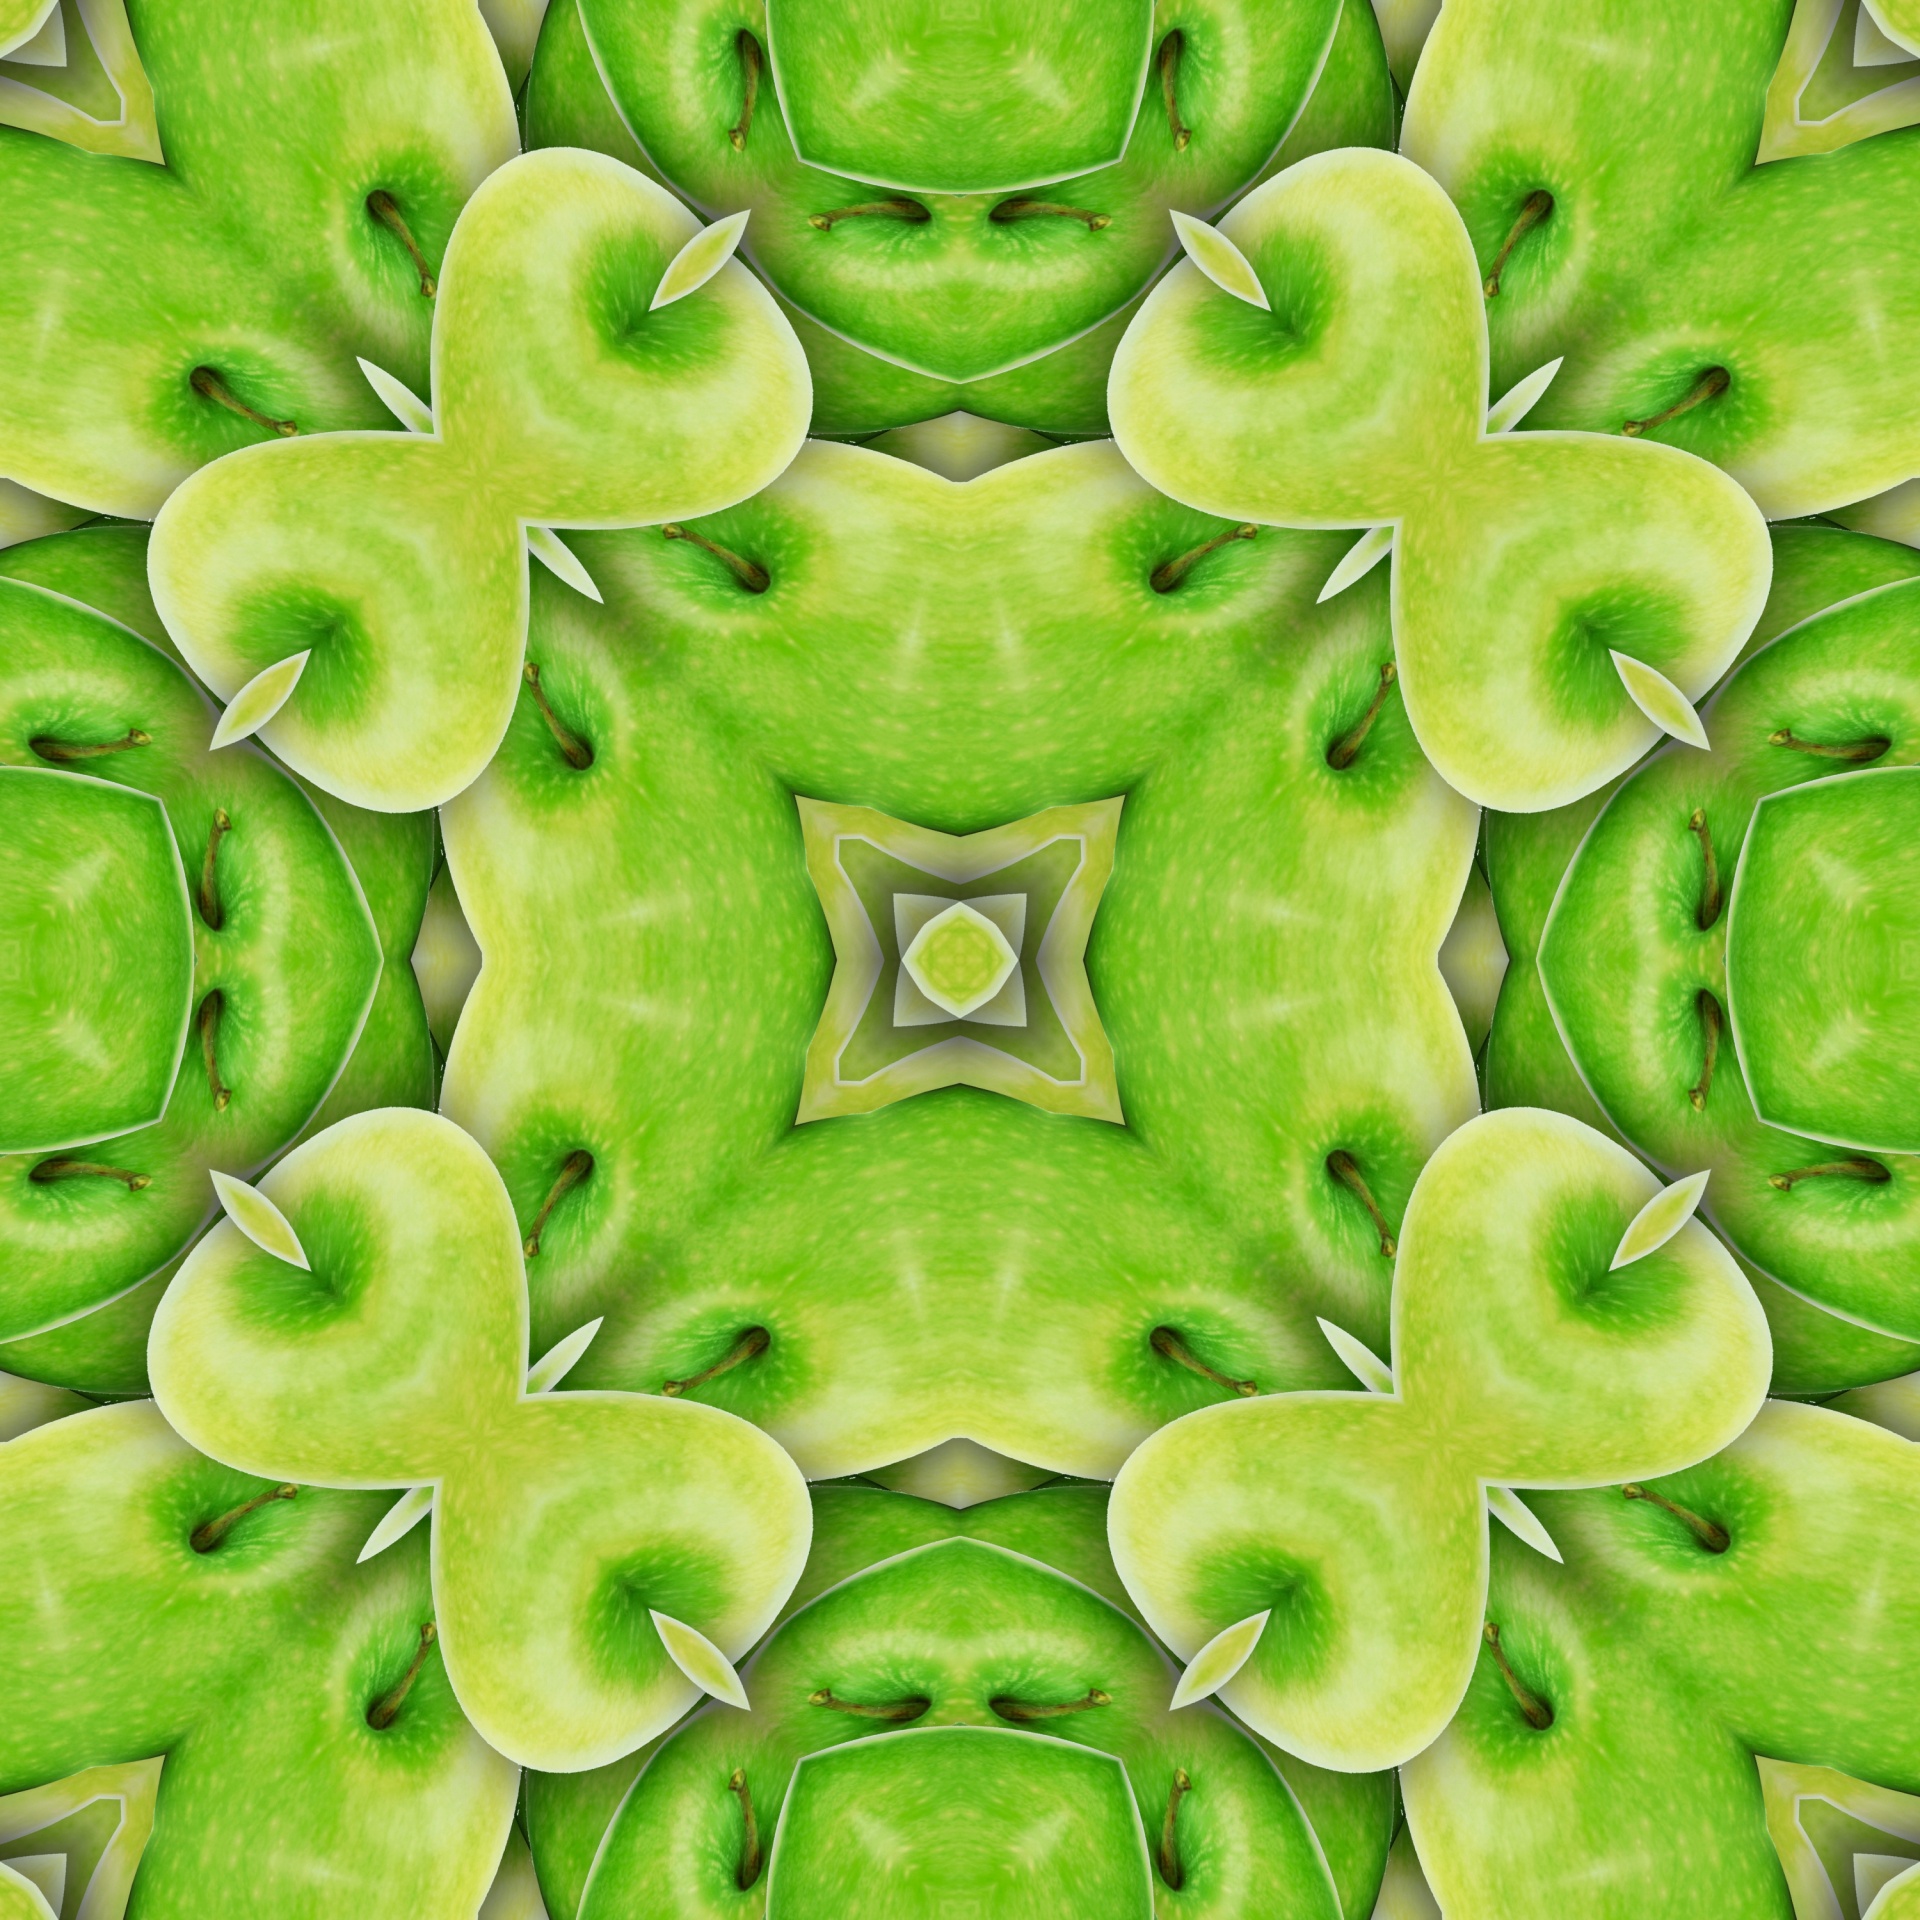 Manzanas verdes 01